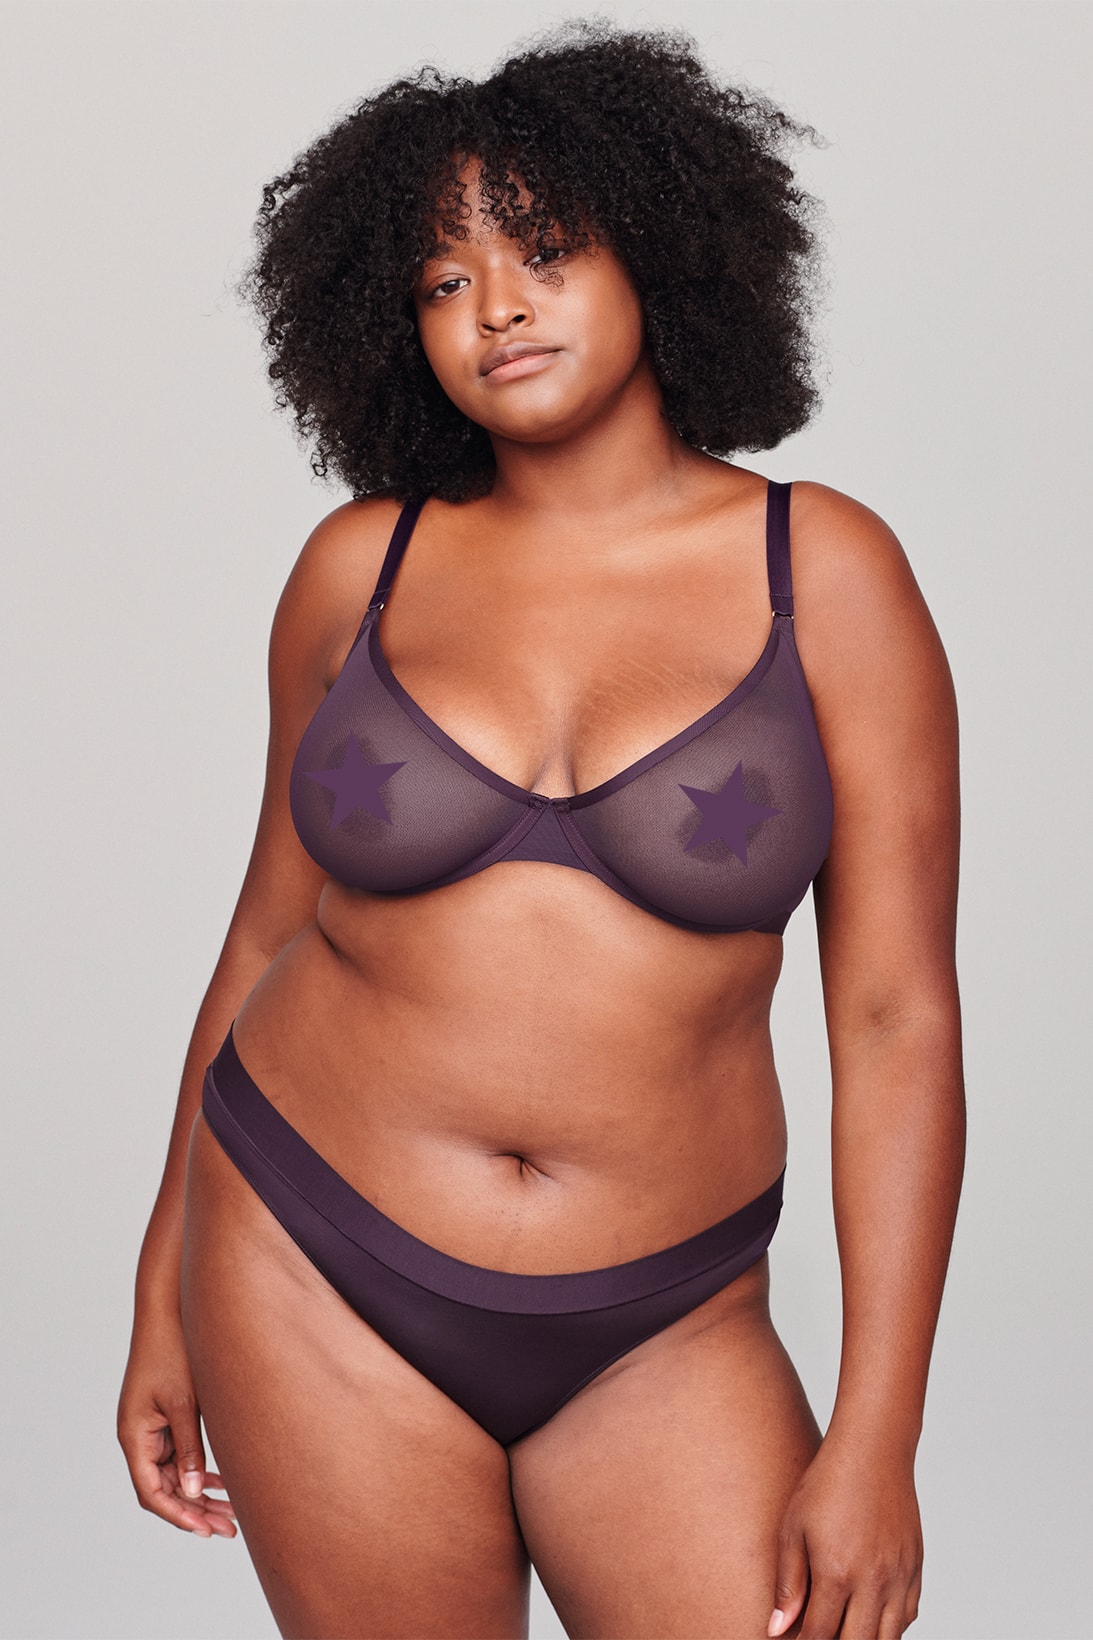 cuup dusk collection new colorway dark purple bras lingerie underwear